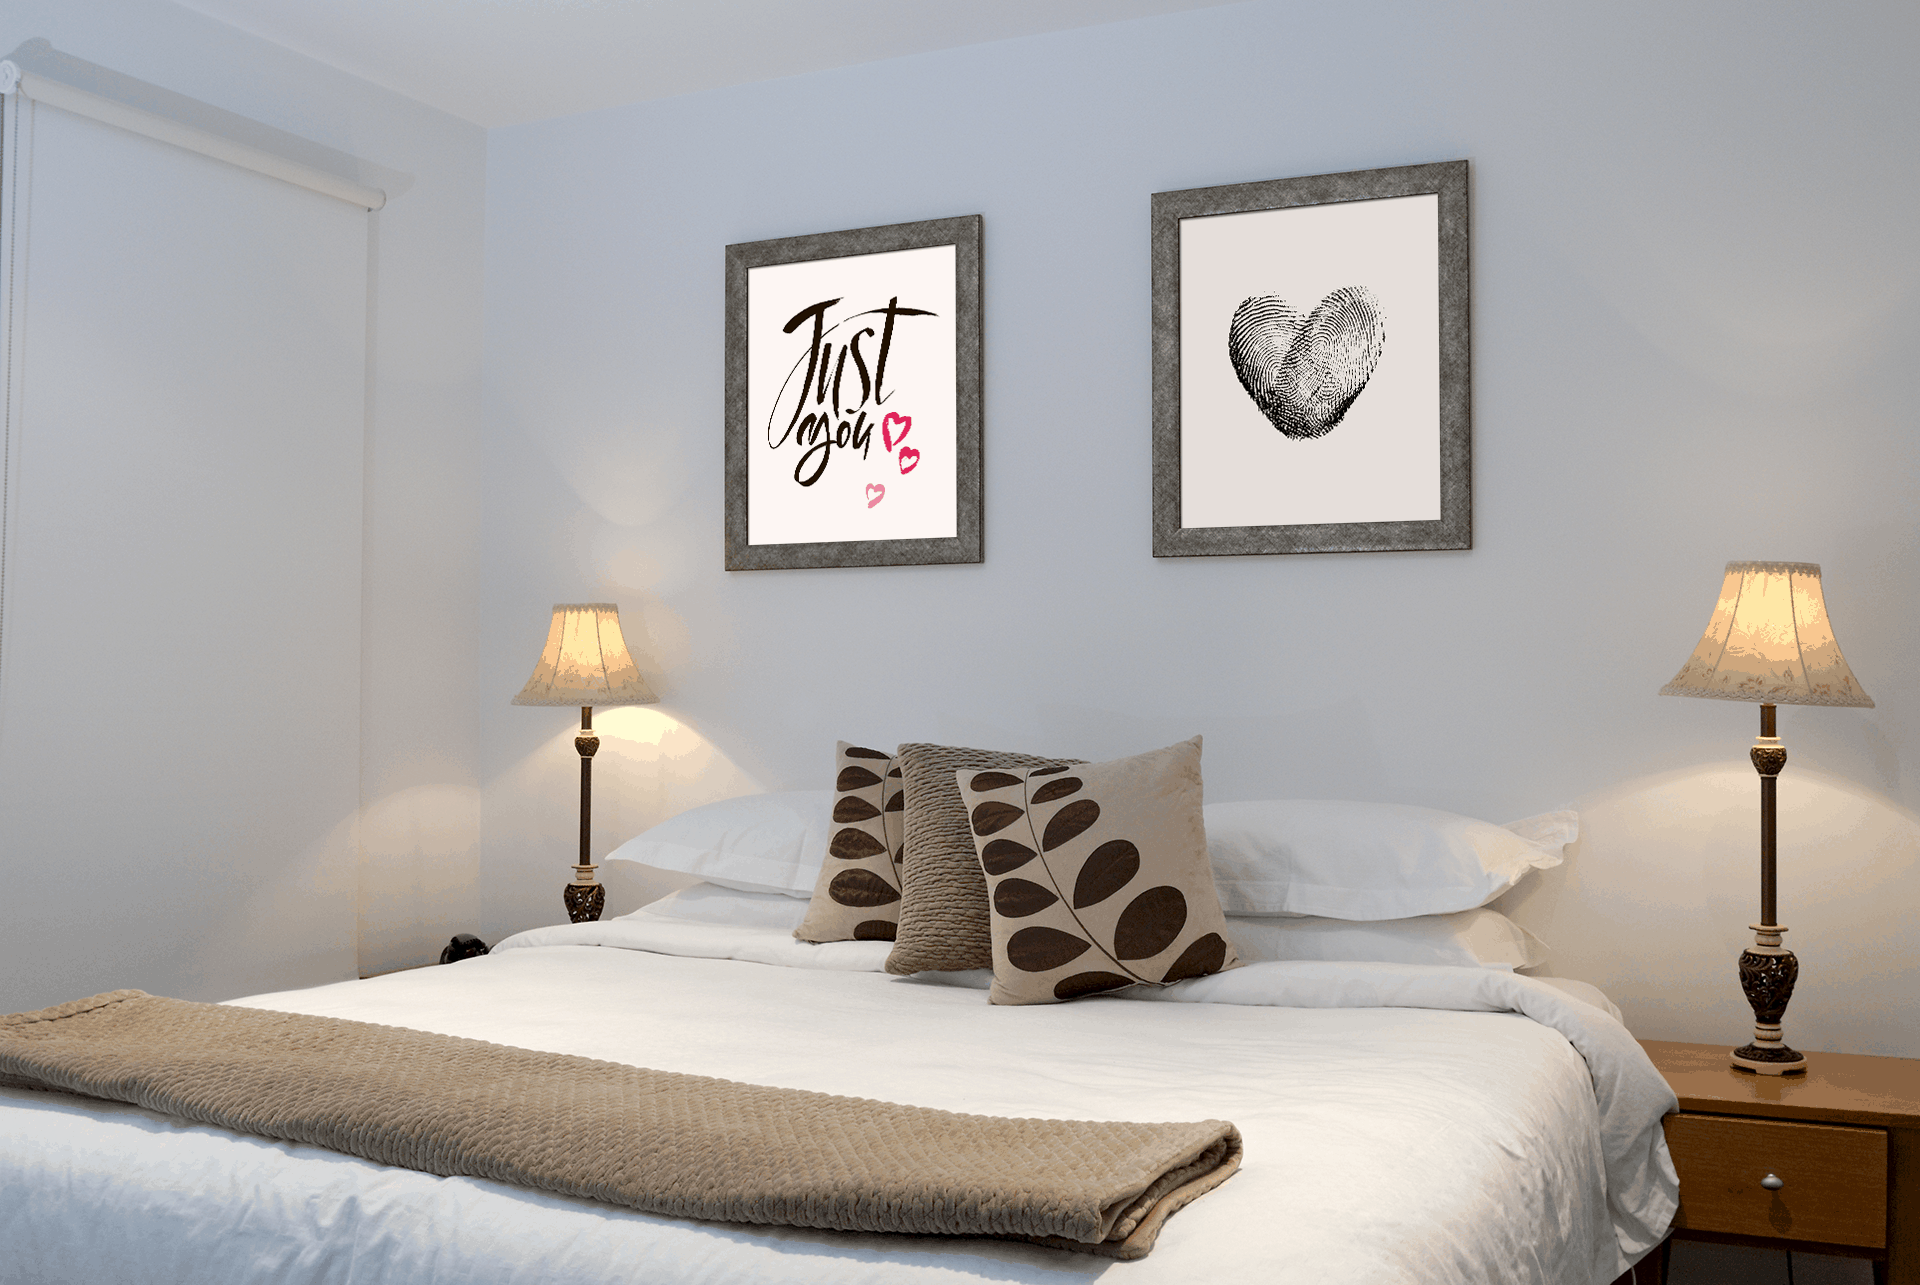 Art Decor For Bedroom